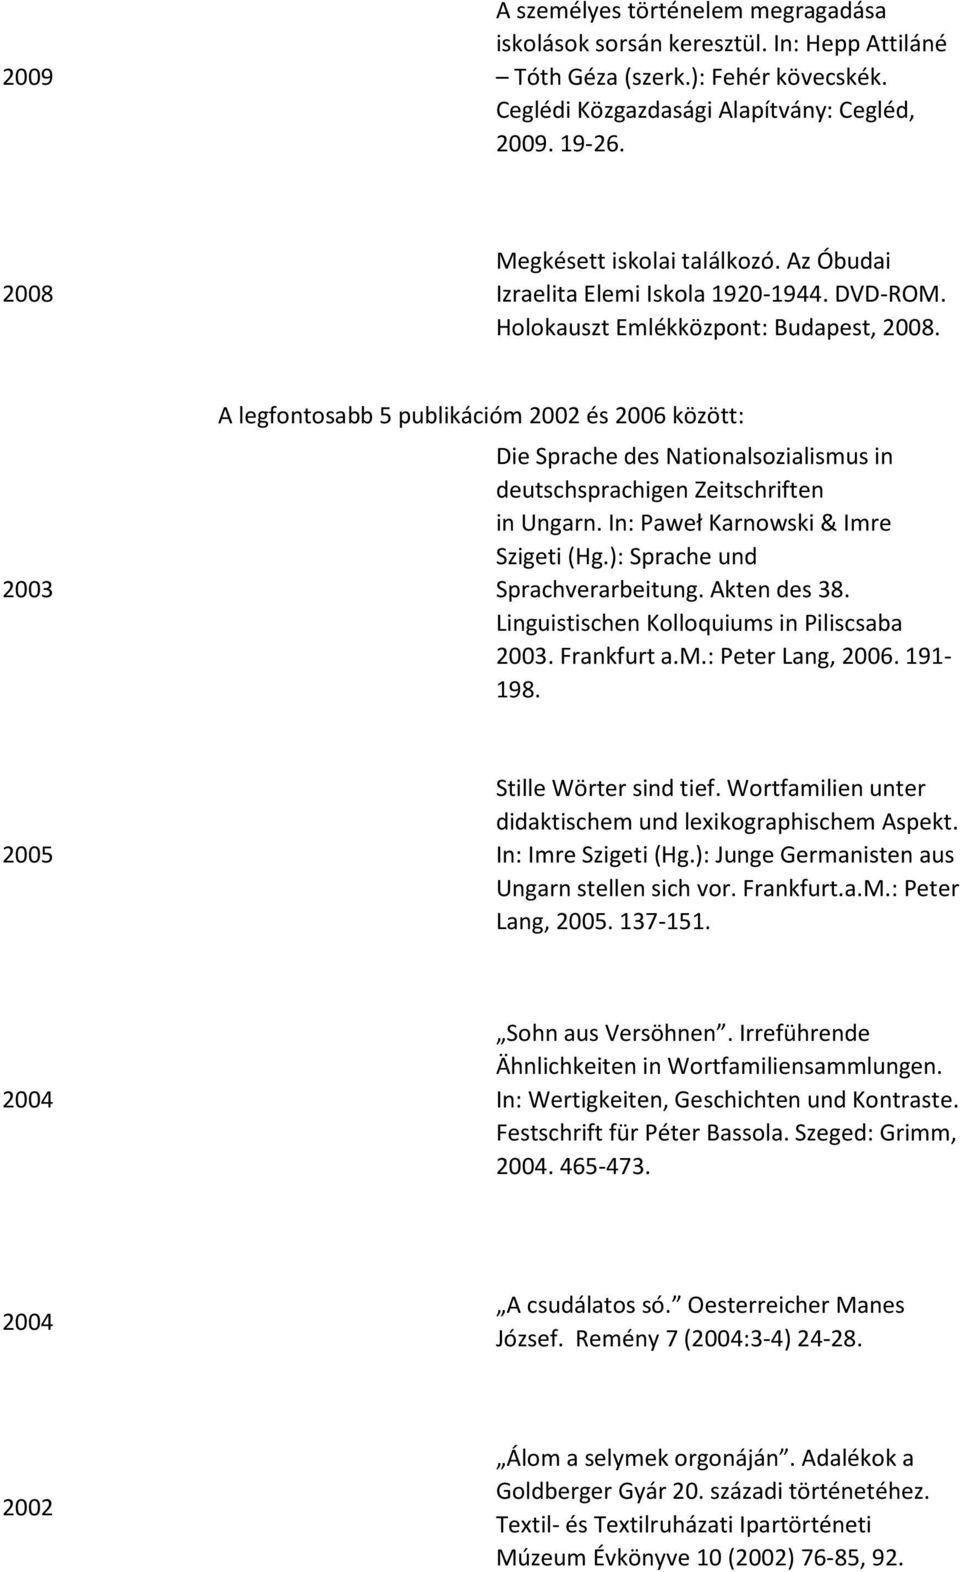 2003 A legfontosabb 5 publikációm 2002 és 2006 között: Die Sprache des Nationalsozialismus in deutschsprachigen Zeitschriften in Ungarn. In: Paweł Karnowski & Imre Szigeti (Hg.